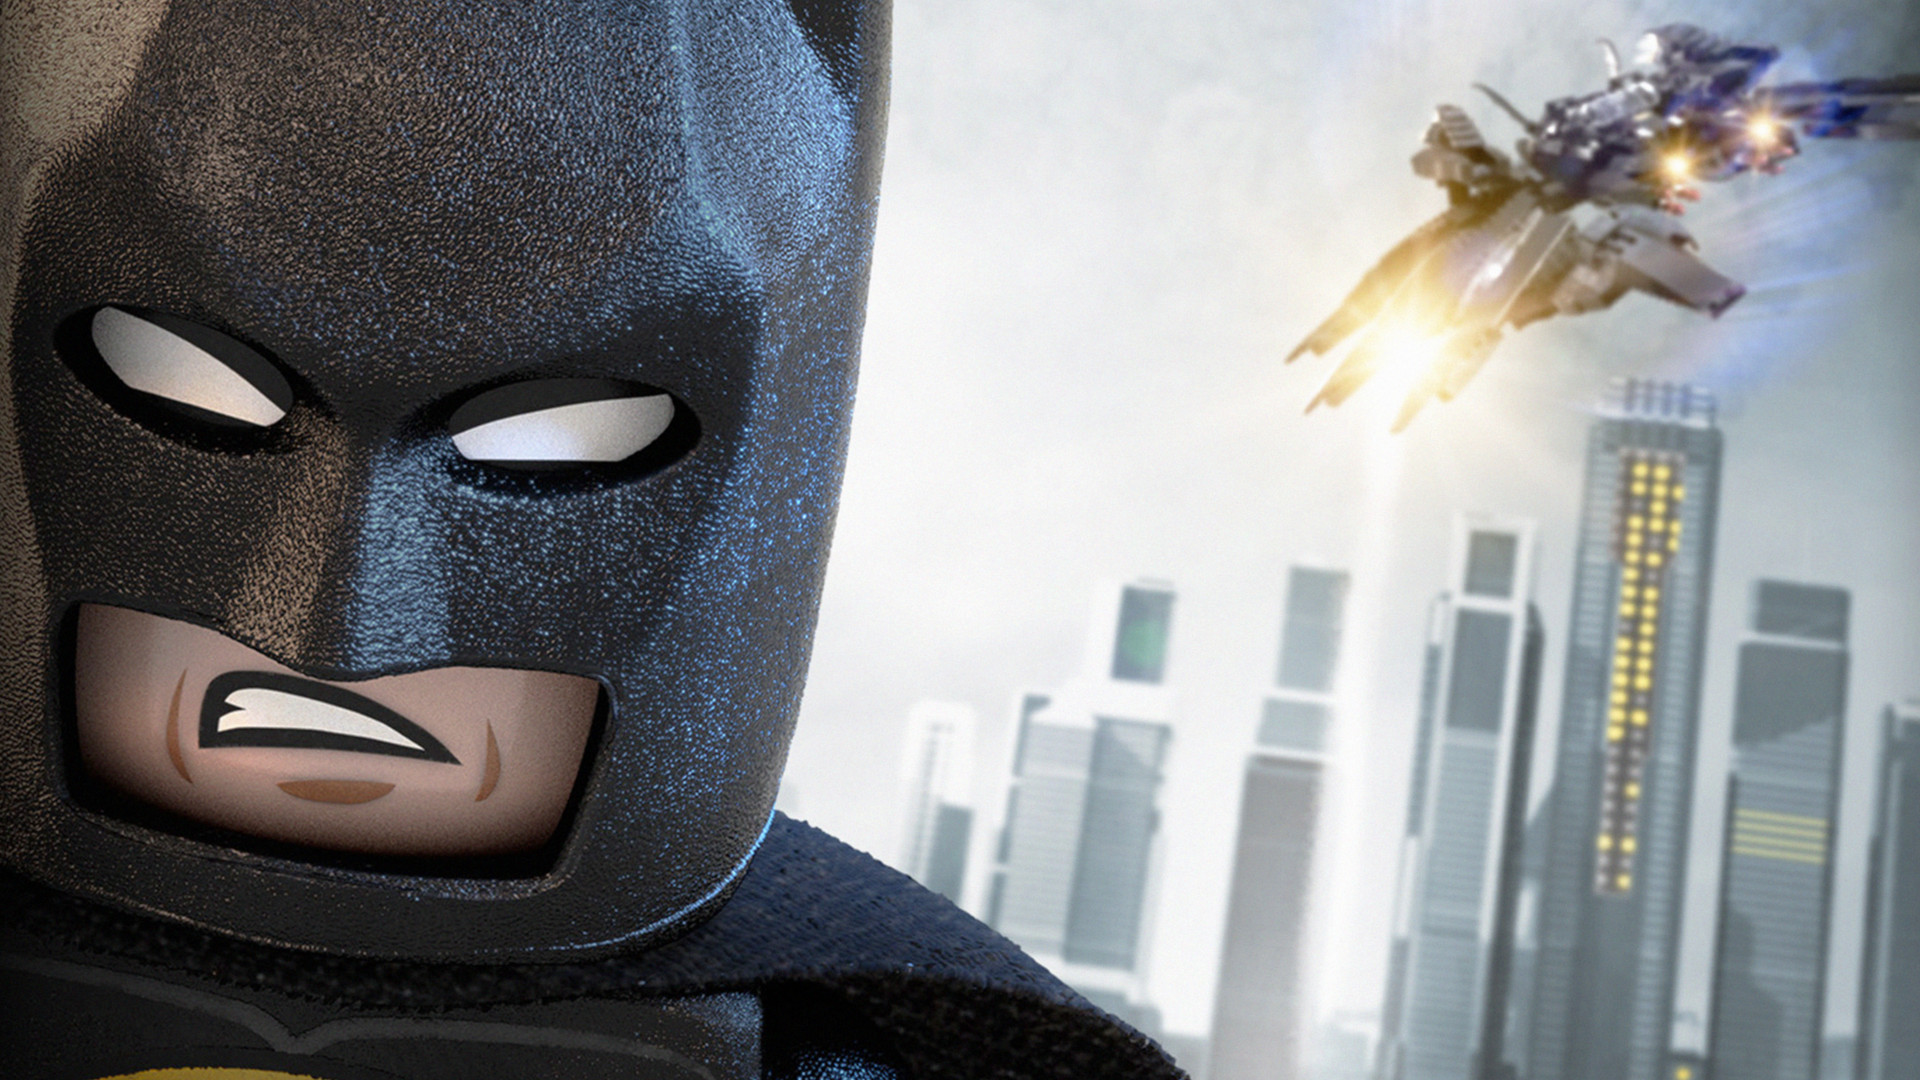 Скачать обои бесплатно Кино, Бэтмен, Лего, Лего Фильм картинка на рабочий стол ПК